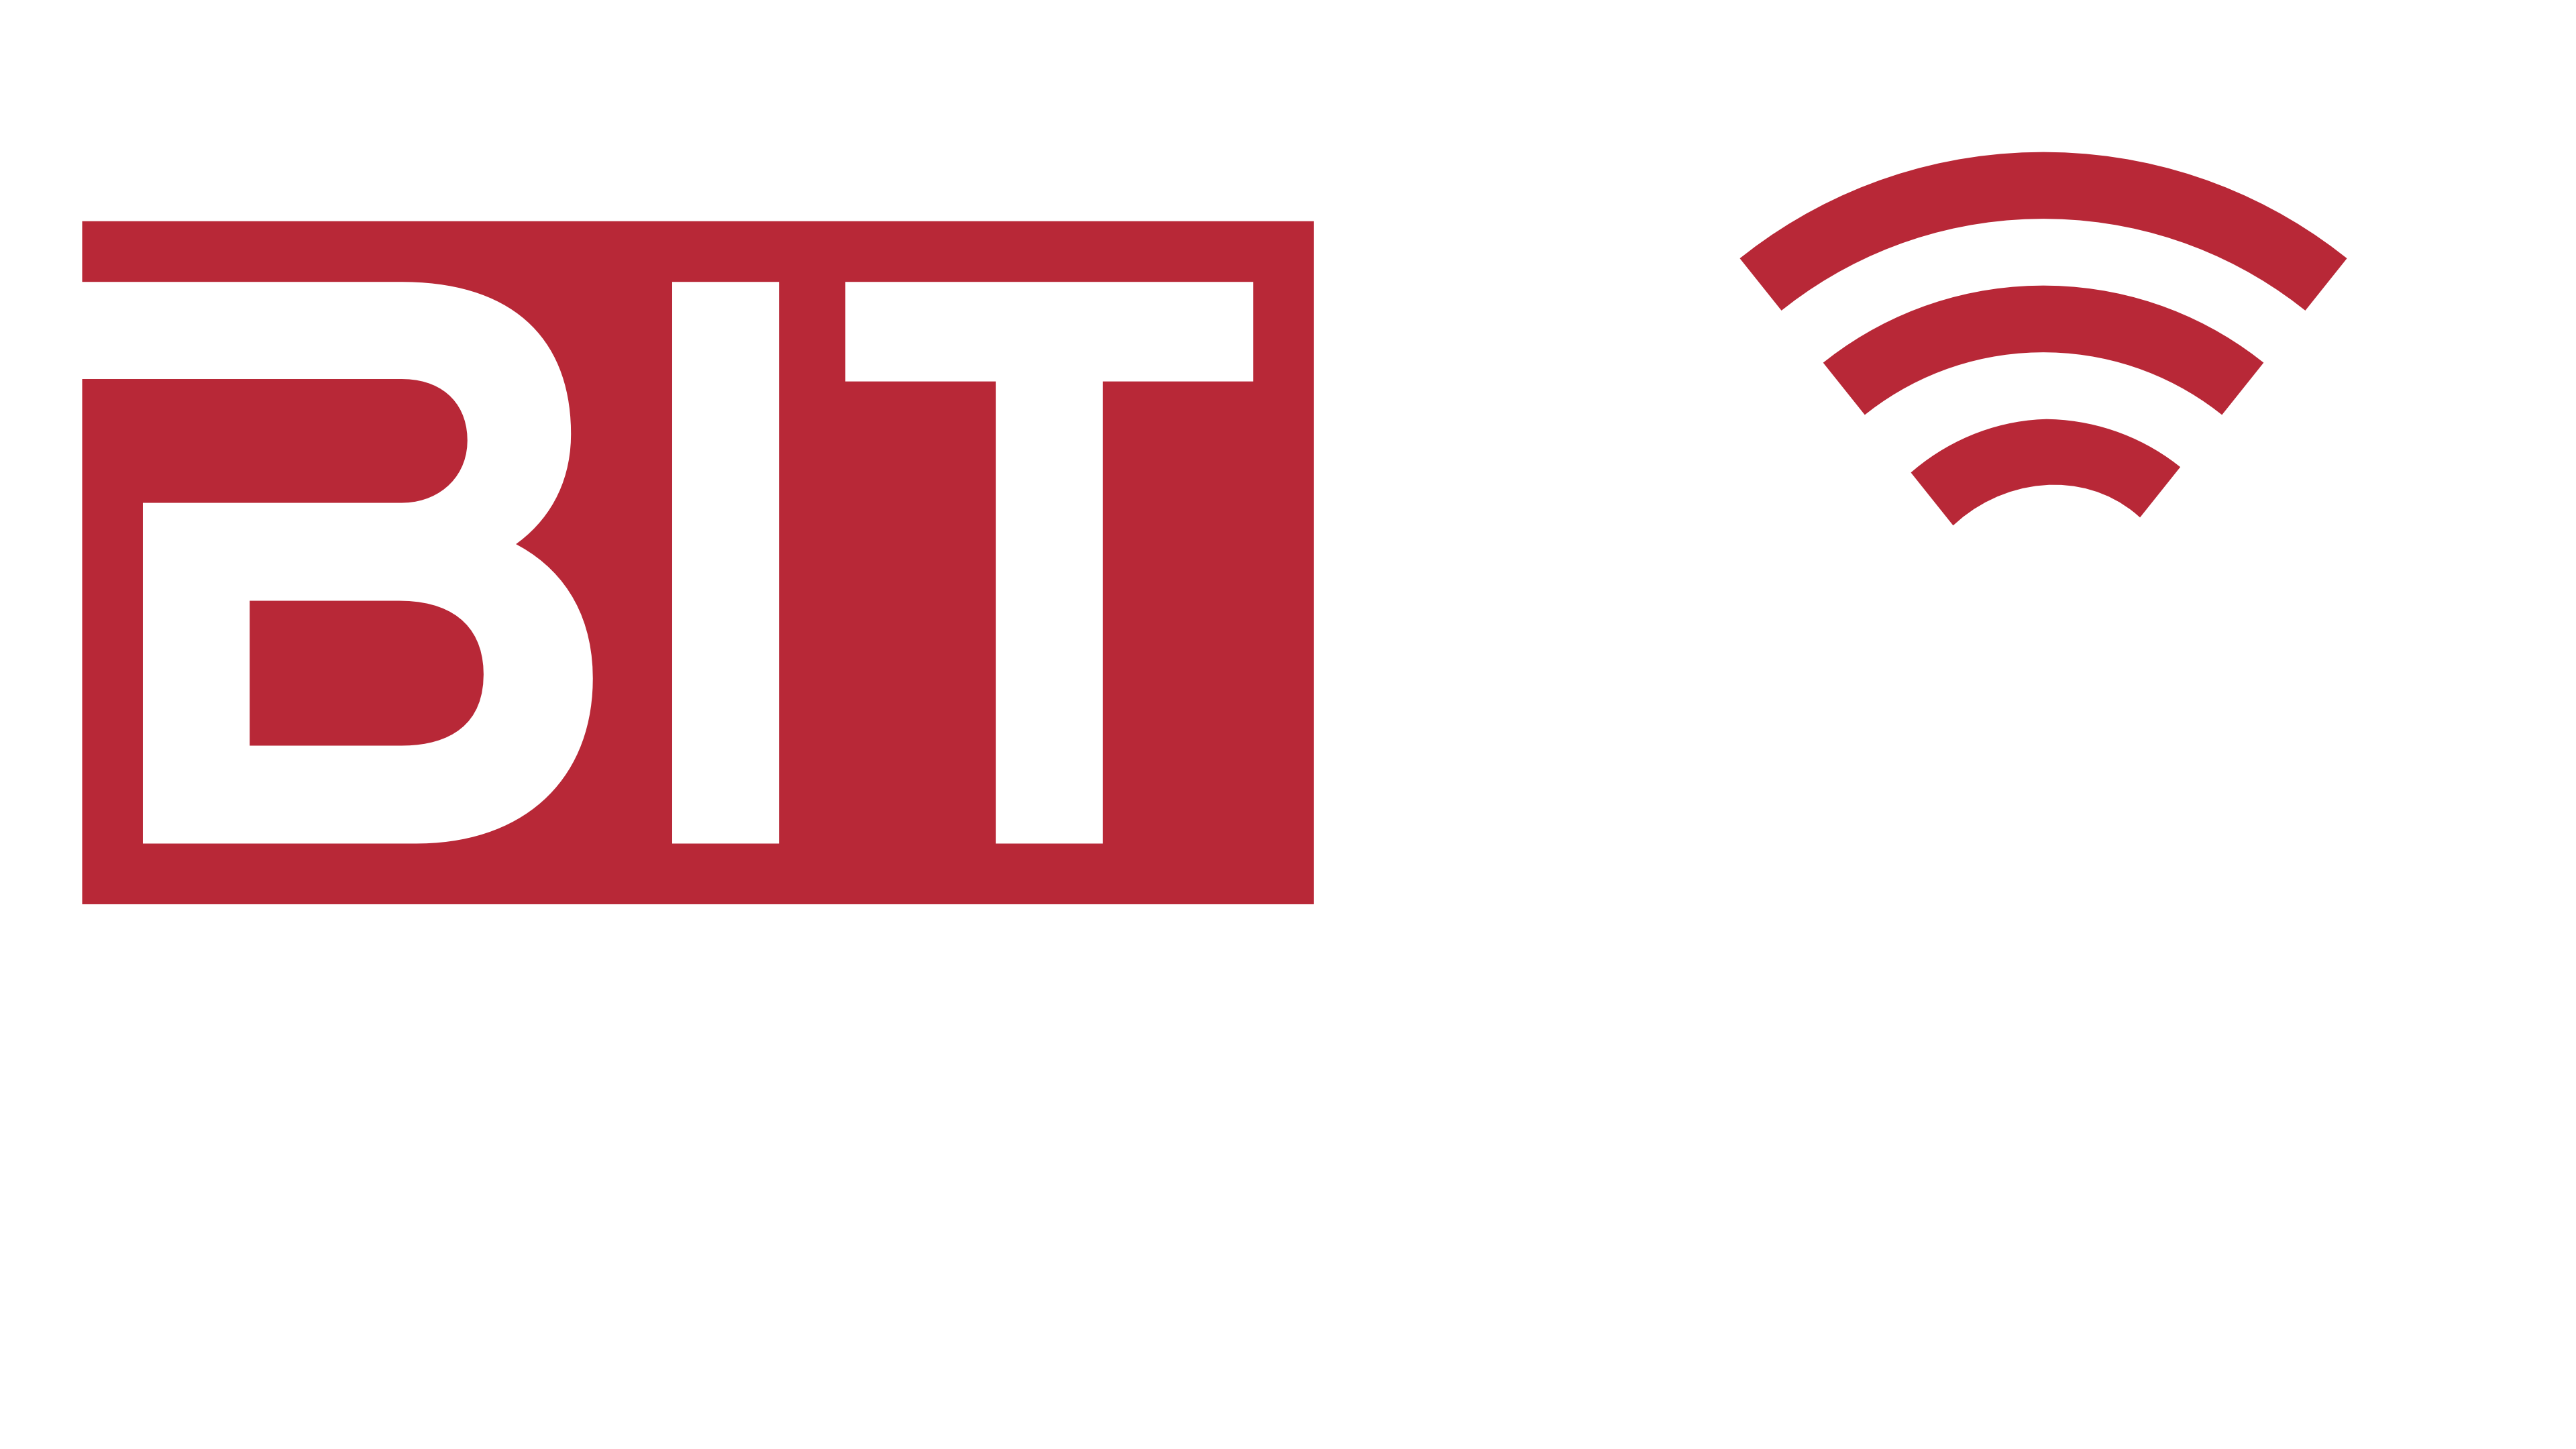 BITnet System GbR